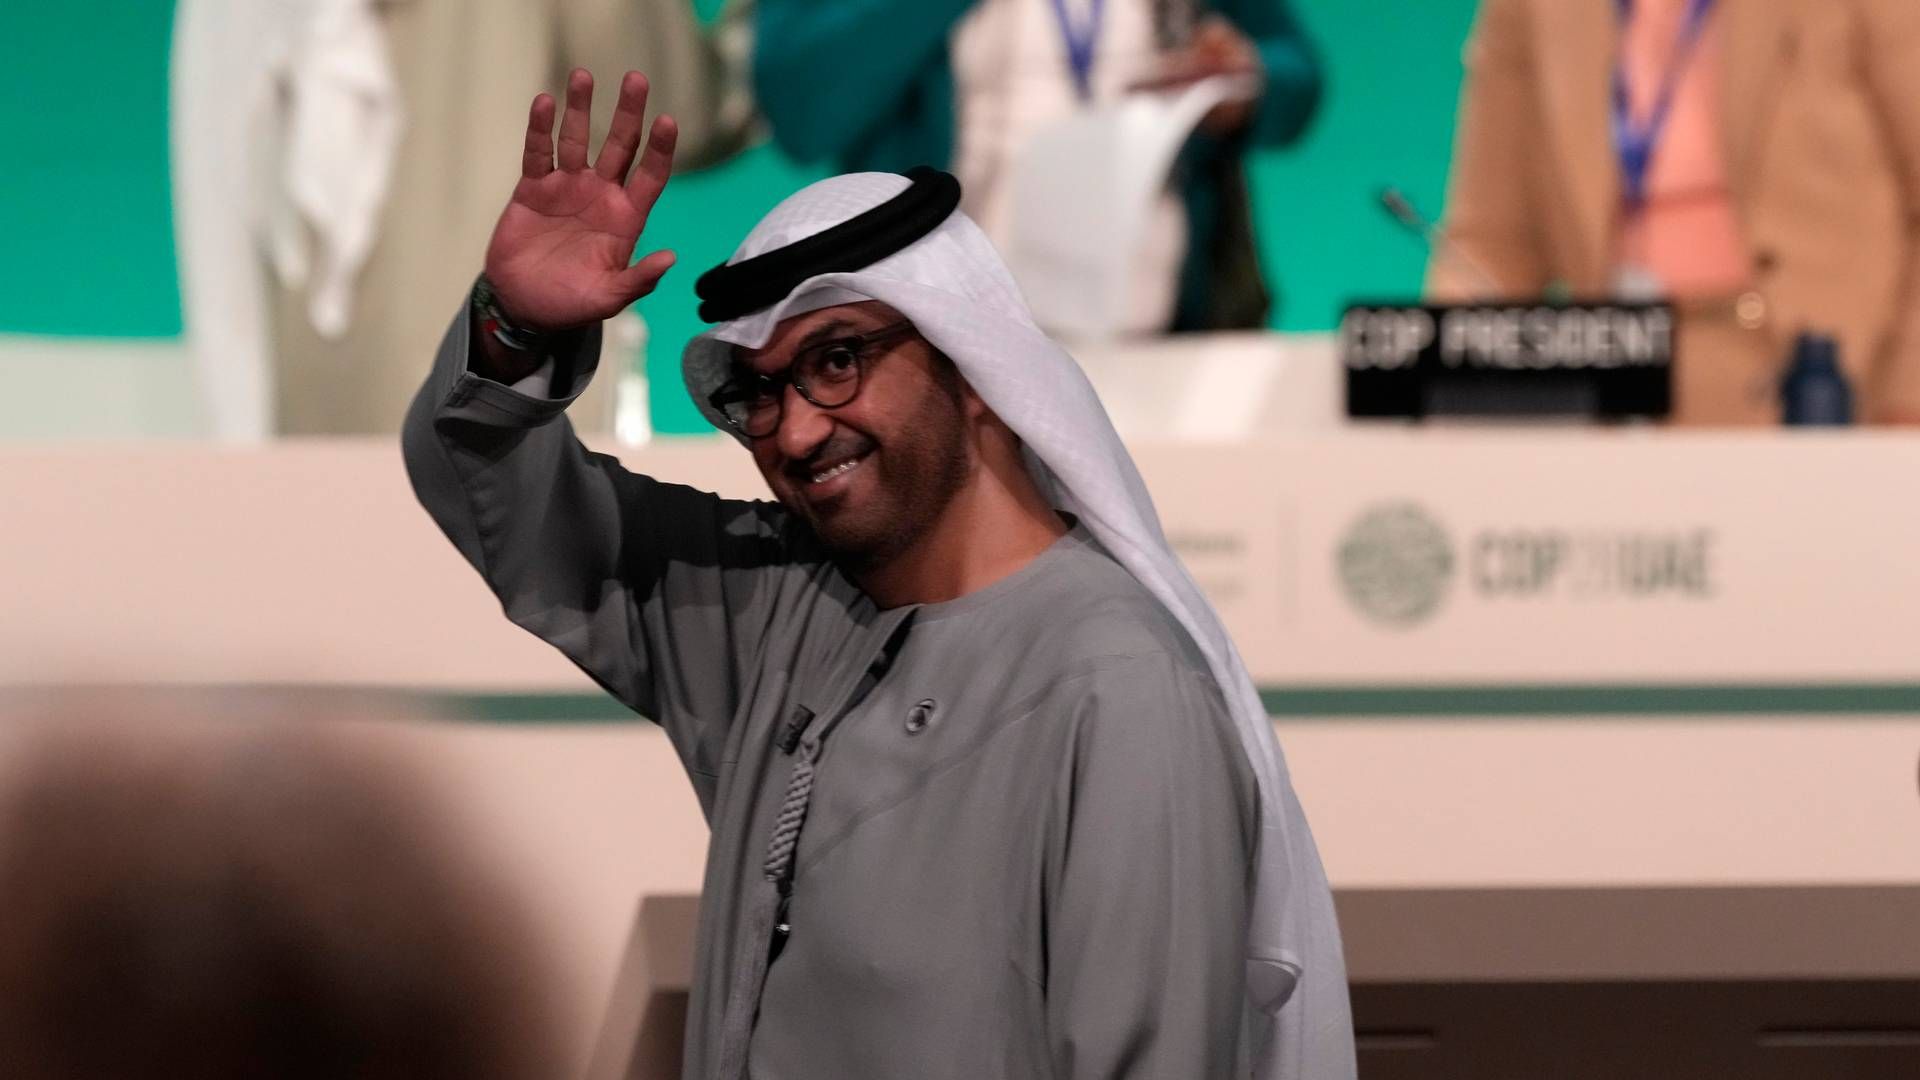 STOLT: Lederen for klimatoppmøtet Sultan al-Jaber, kaller beslutningen historisk. | Foto: AP Photo/Kamran Jebreili